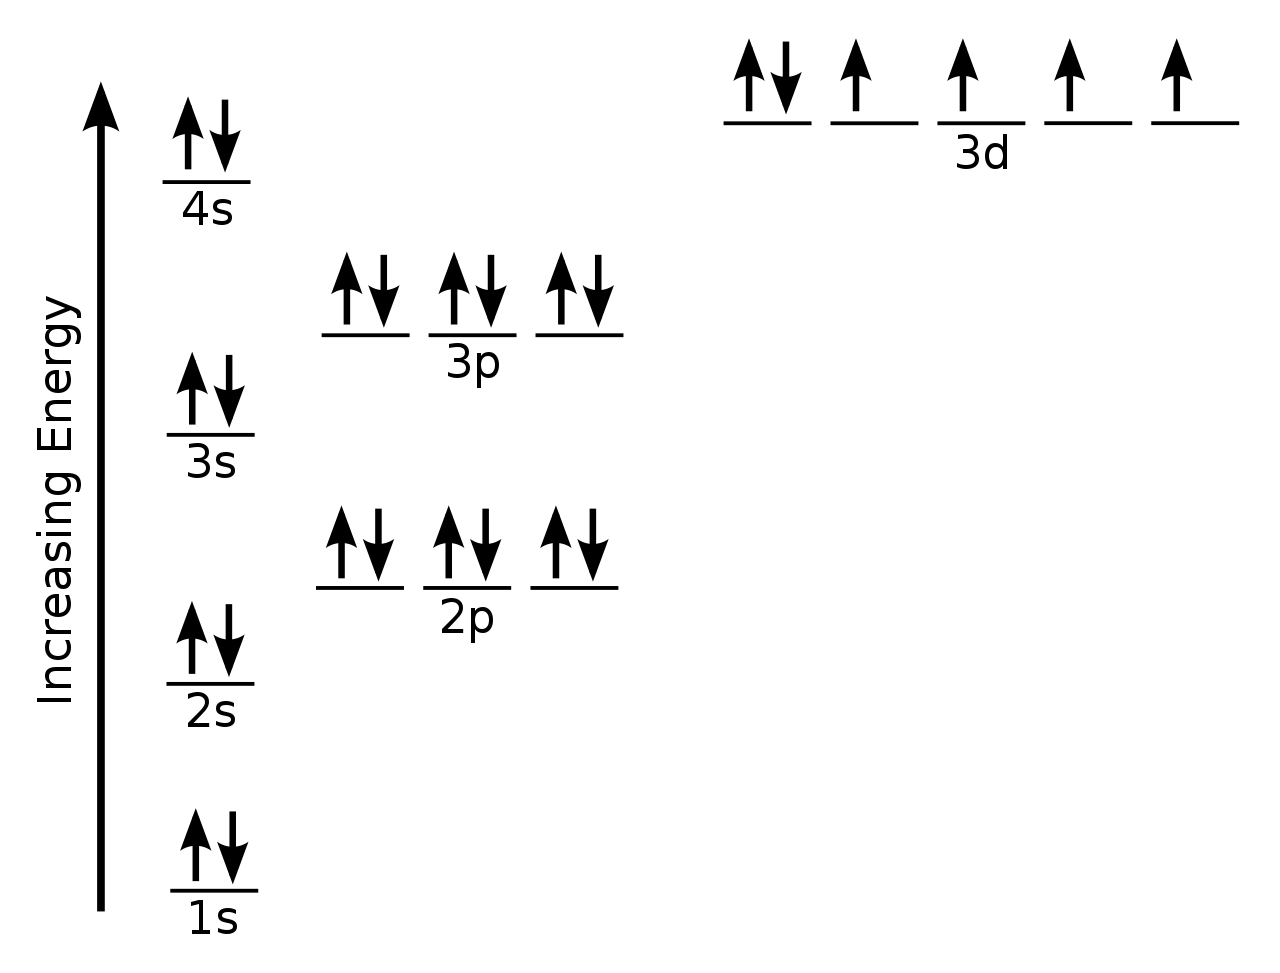 scandium orbital diagram